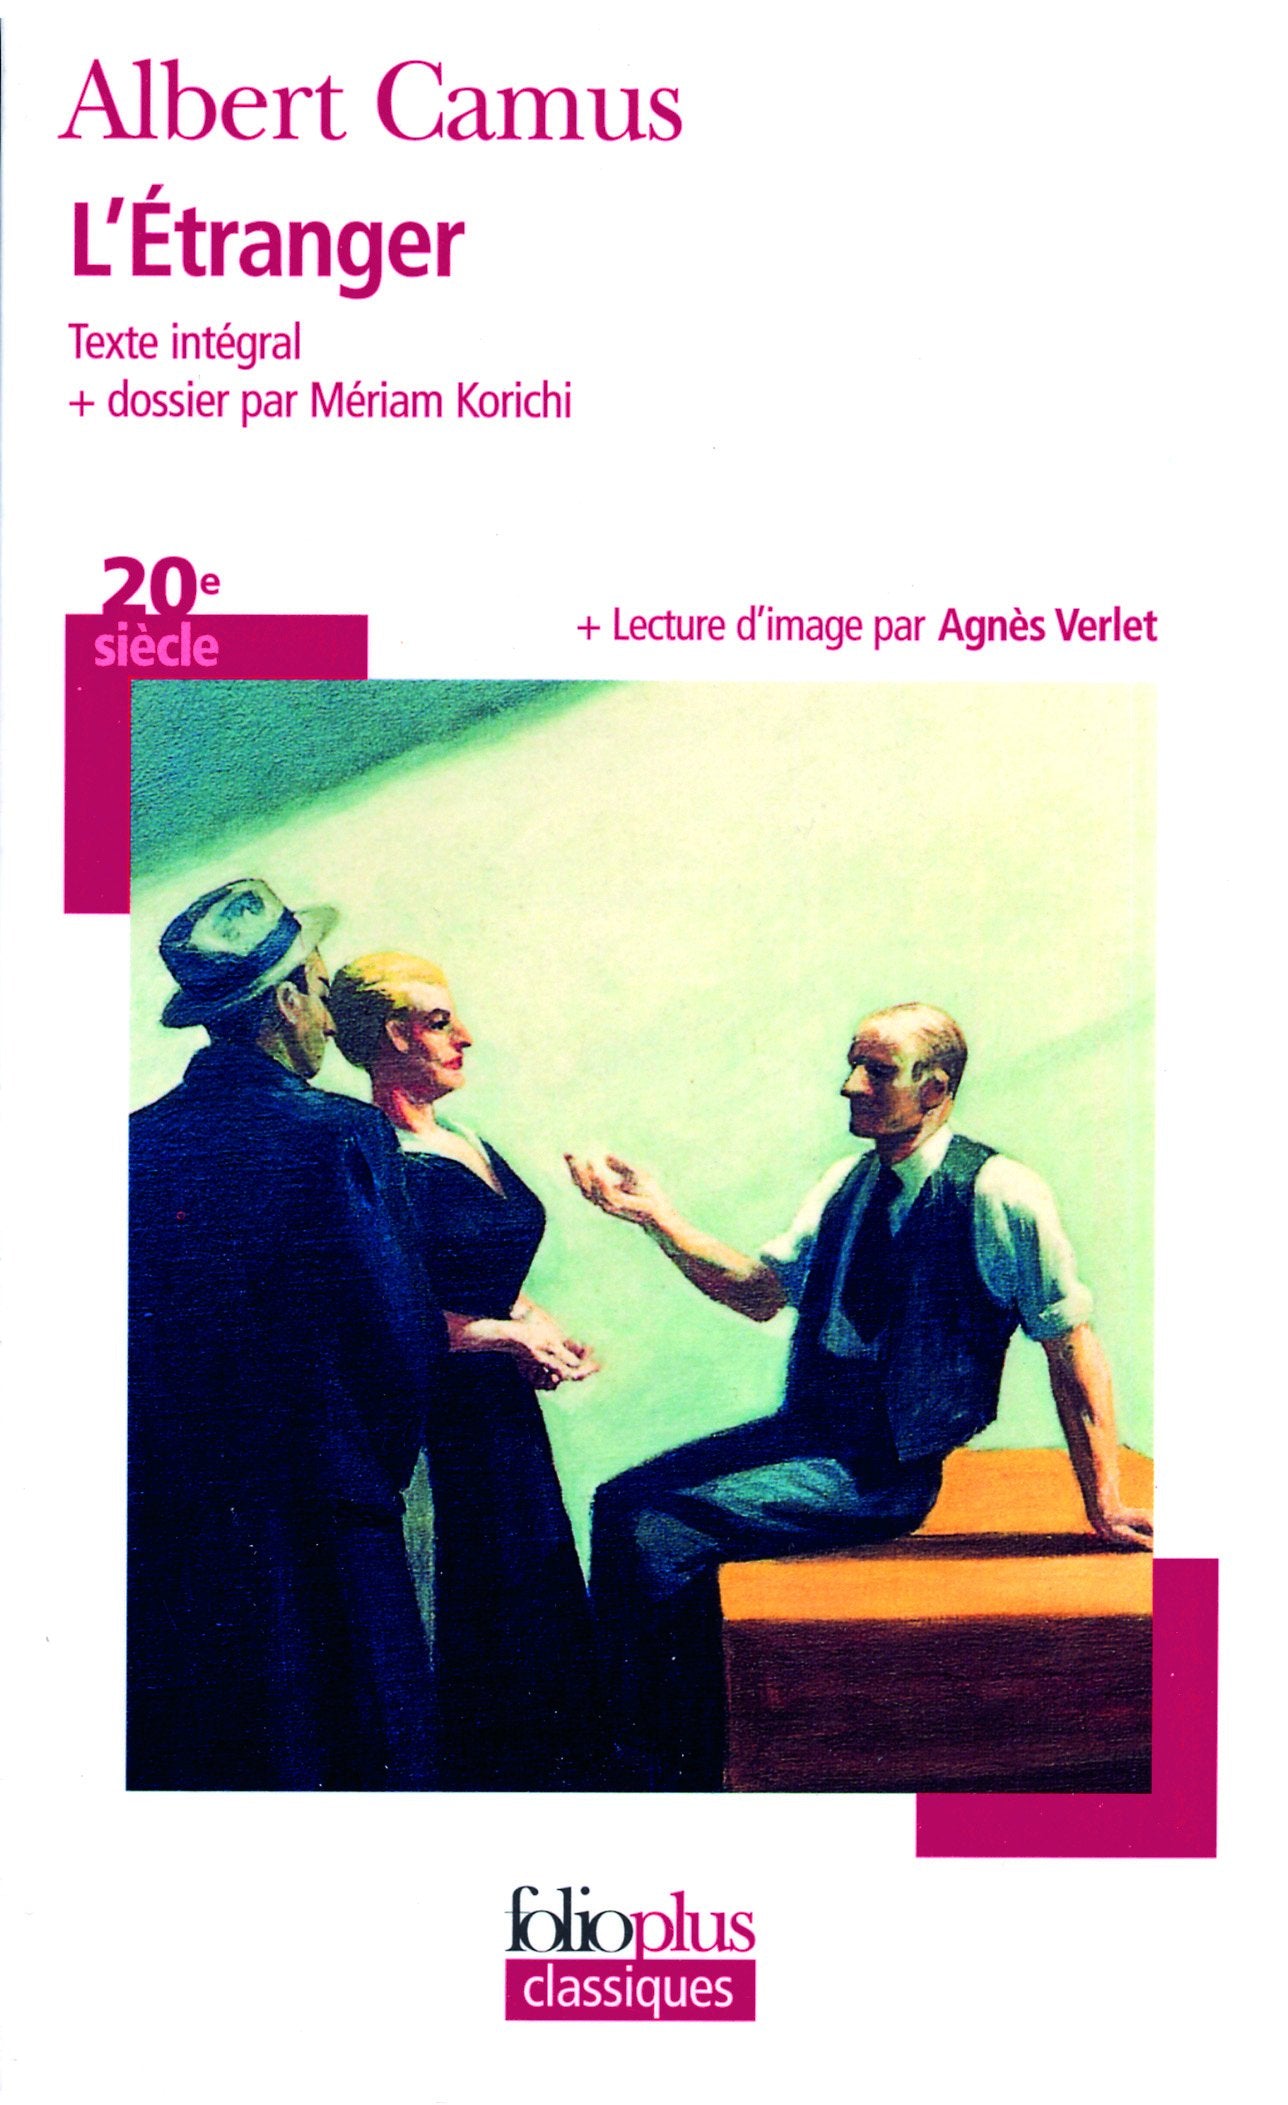 Folioplus Classiques # 40 : L'étranger (texte intégral) - Albert Camus